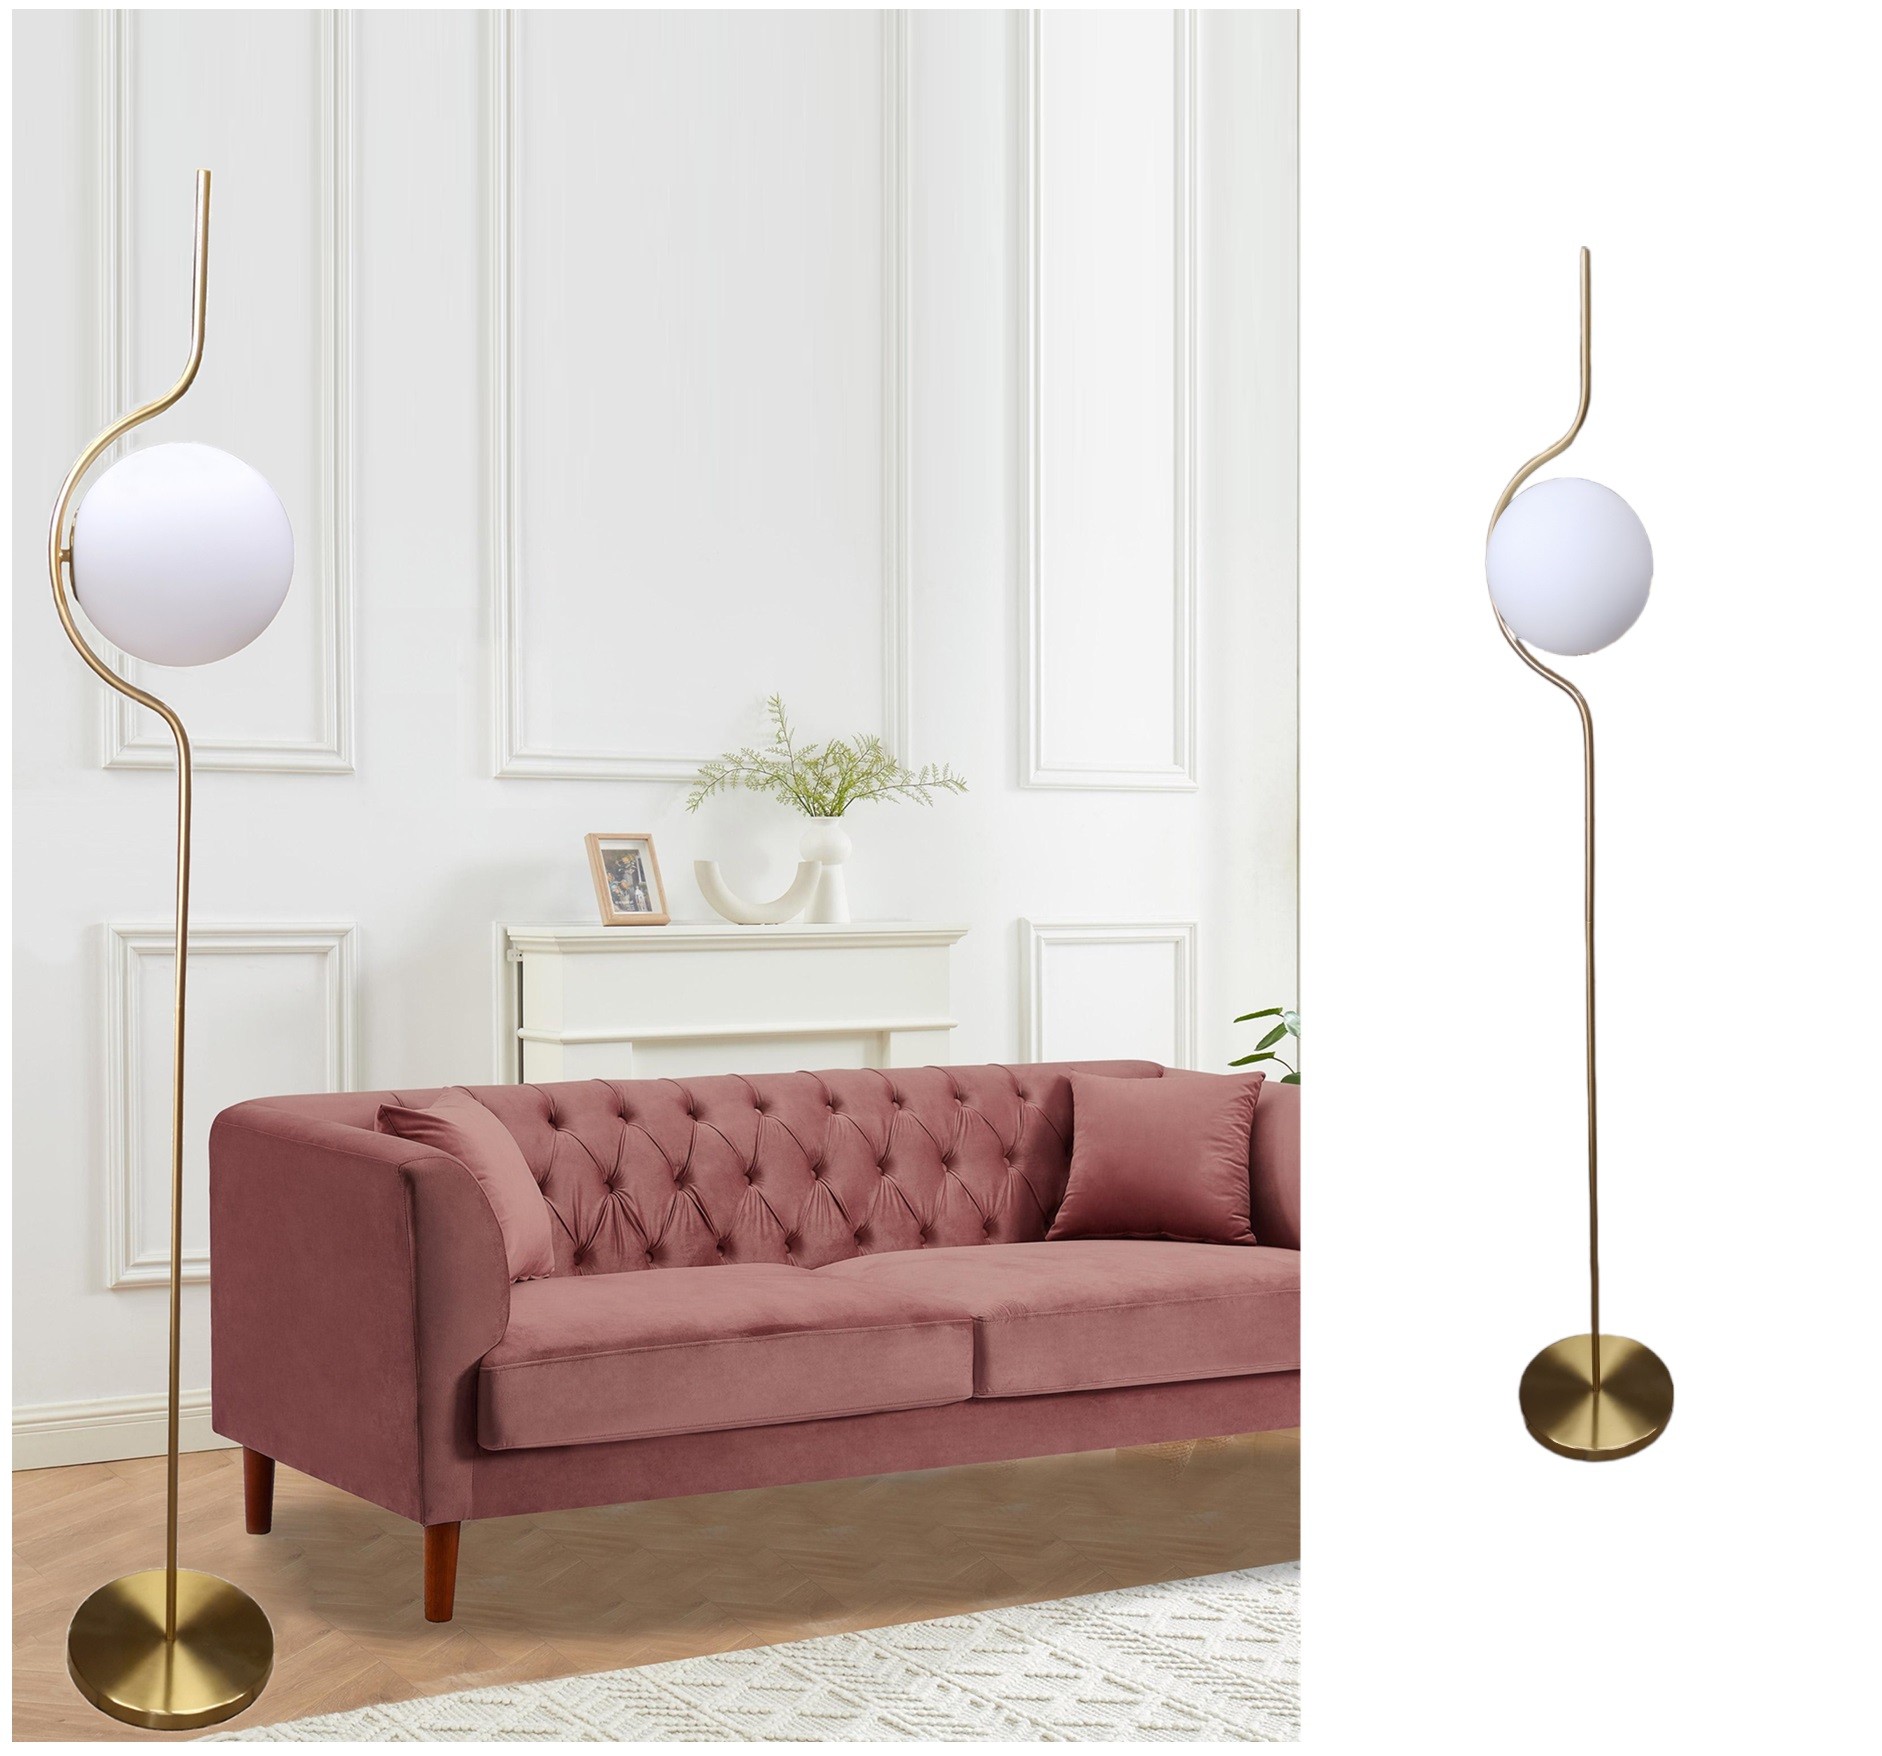 Lampada da terra Oro con sfera in vetro bianco piantana design moderno per  salotto camera